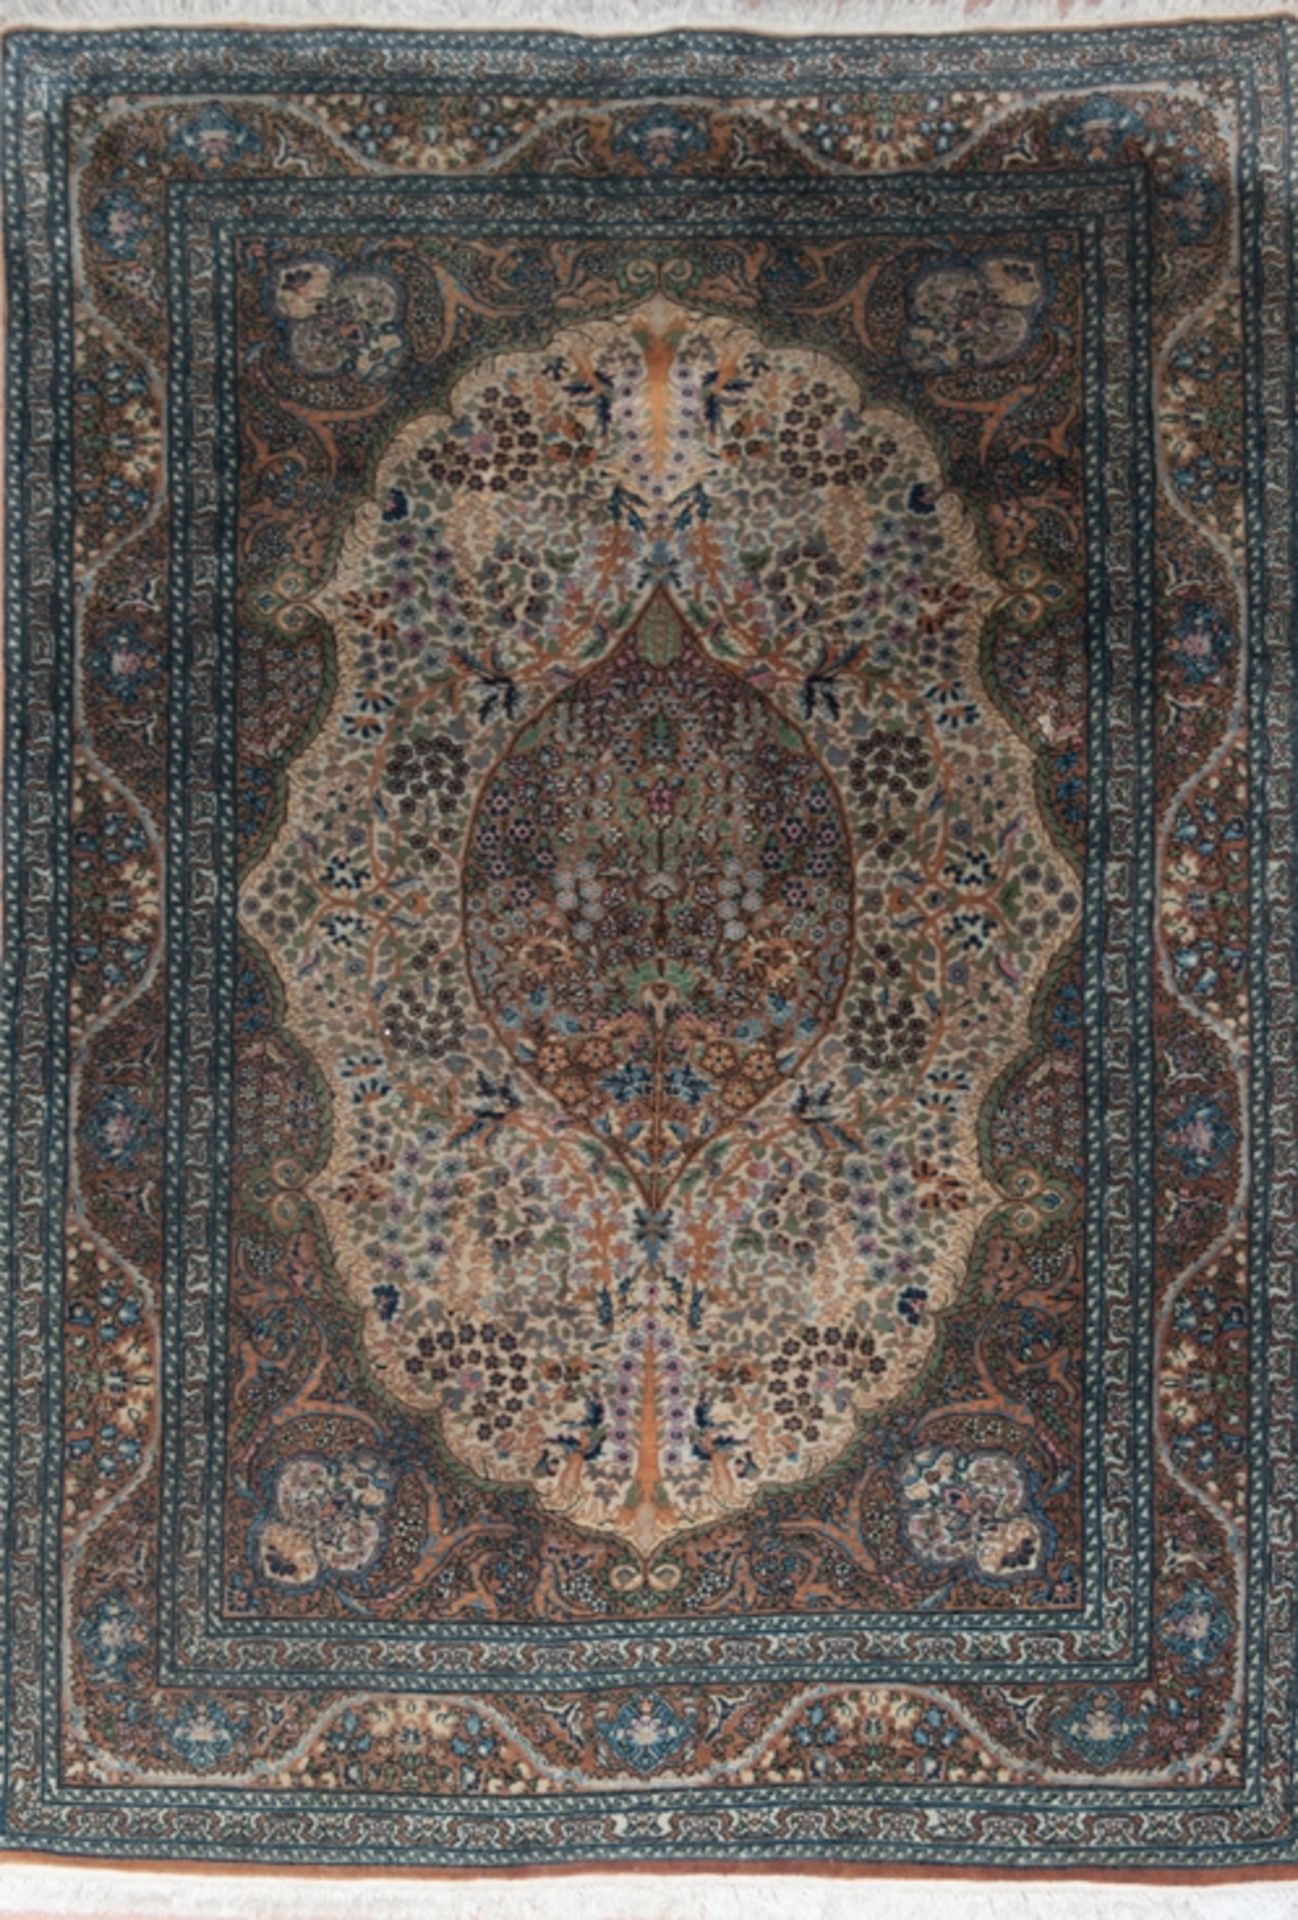 Teppich, grün/blau gemustert auf hellem Grund, mittig ovales Medaillon mit floralem und ornamentale